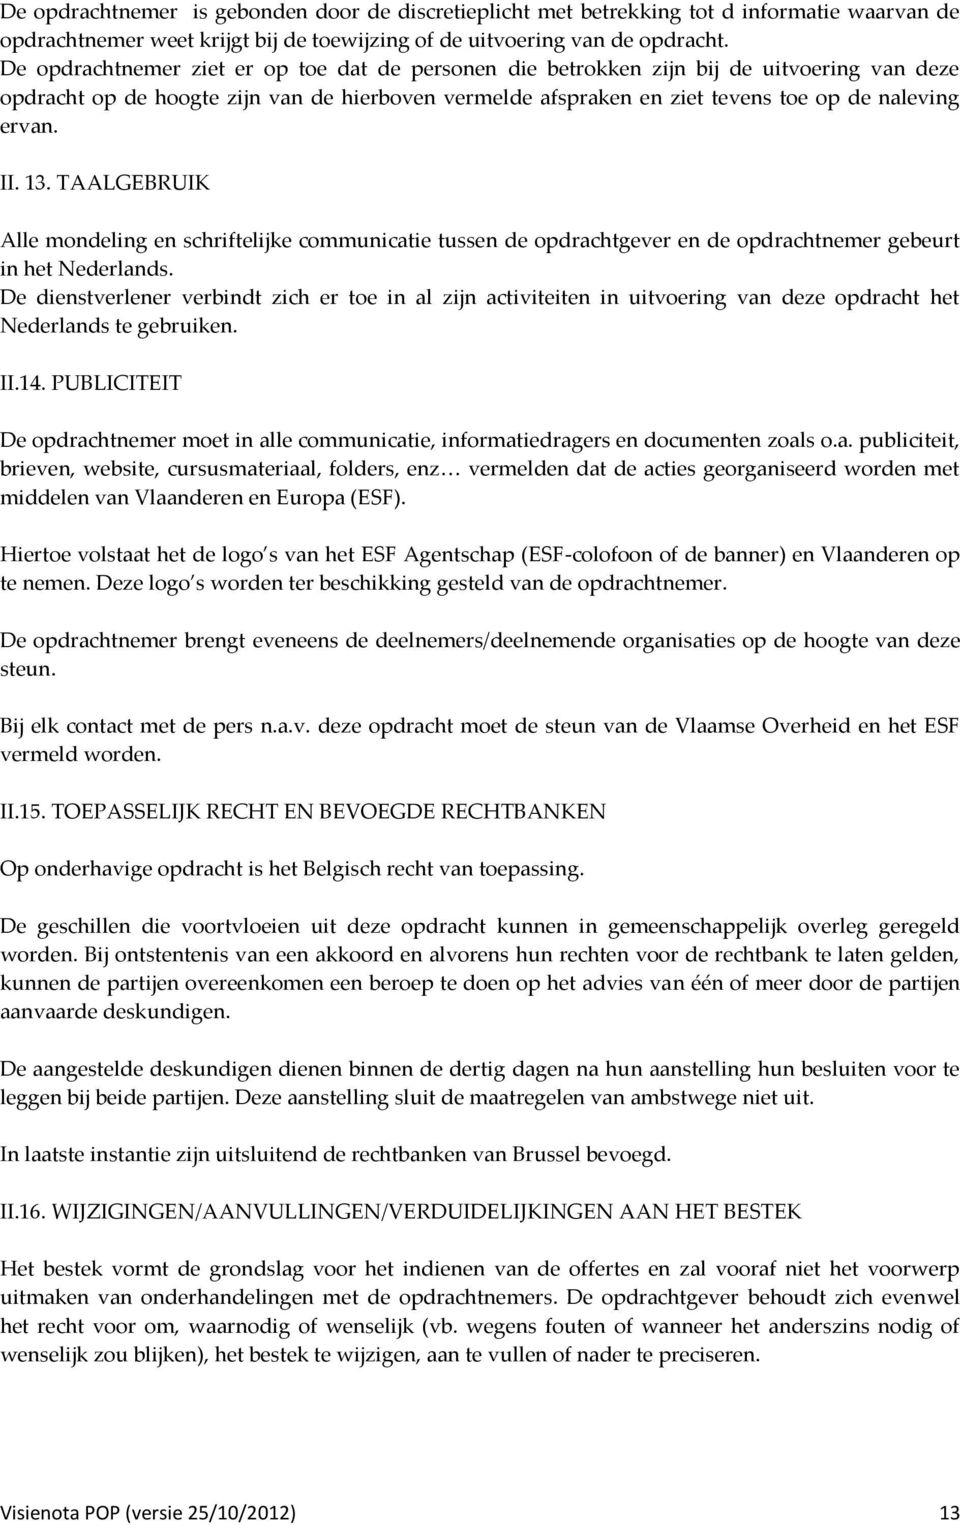 II. 13. TAALGEBRUIK Alle mondeling en schriftelijke communicatie tussen de opdrachtgever en de opdrachtnemer gebeurt in het Nederlands.